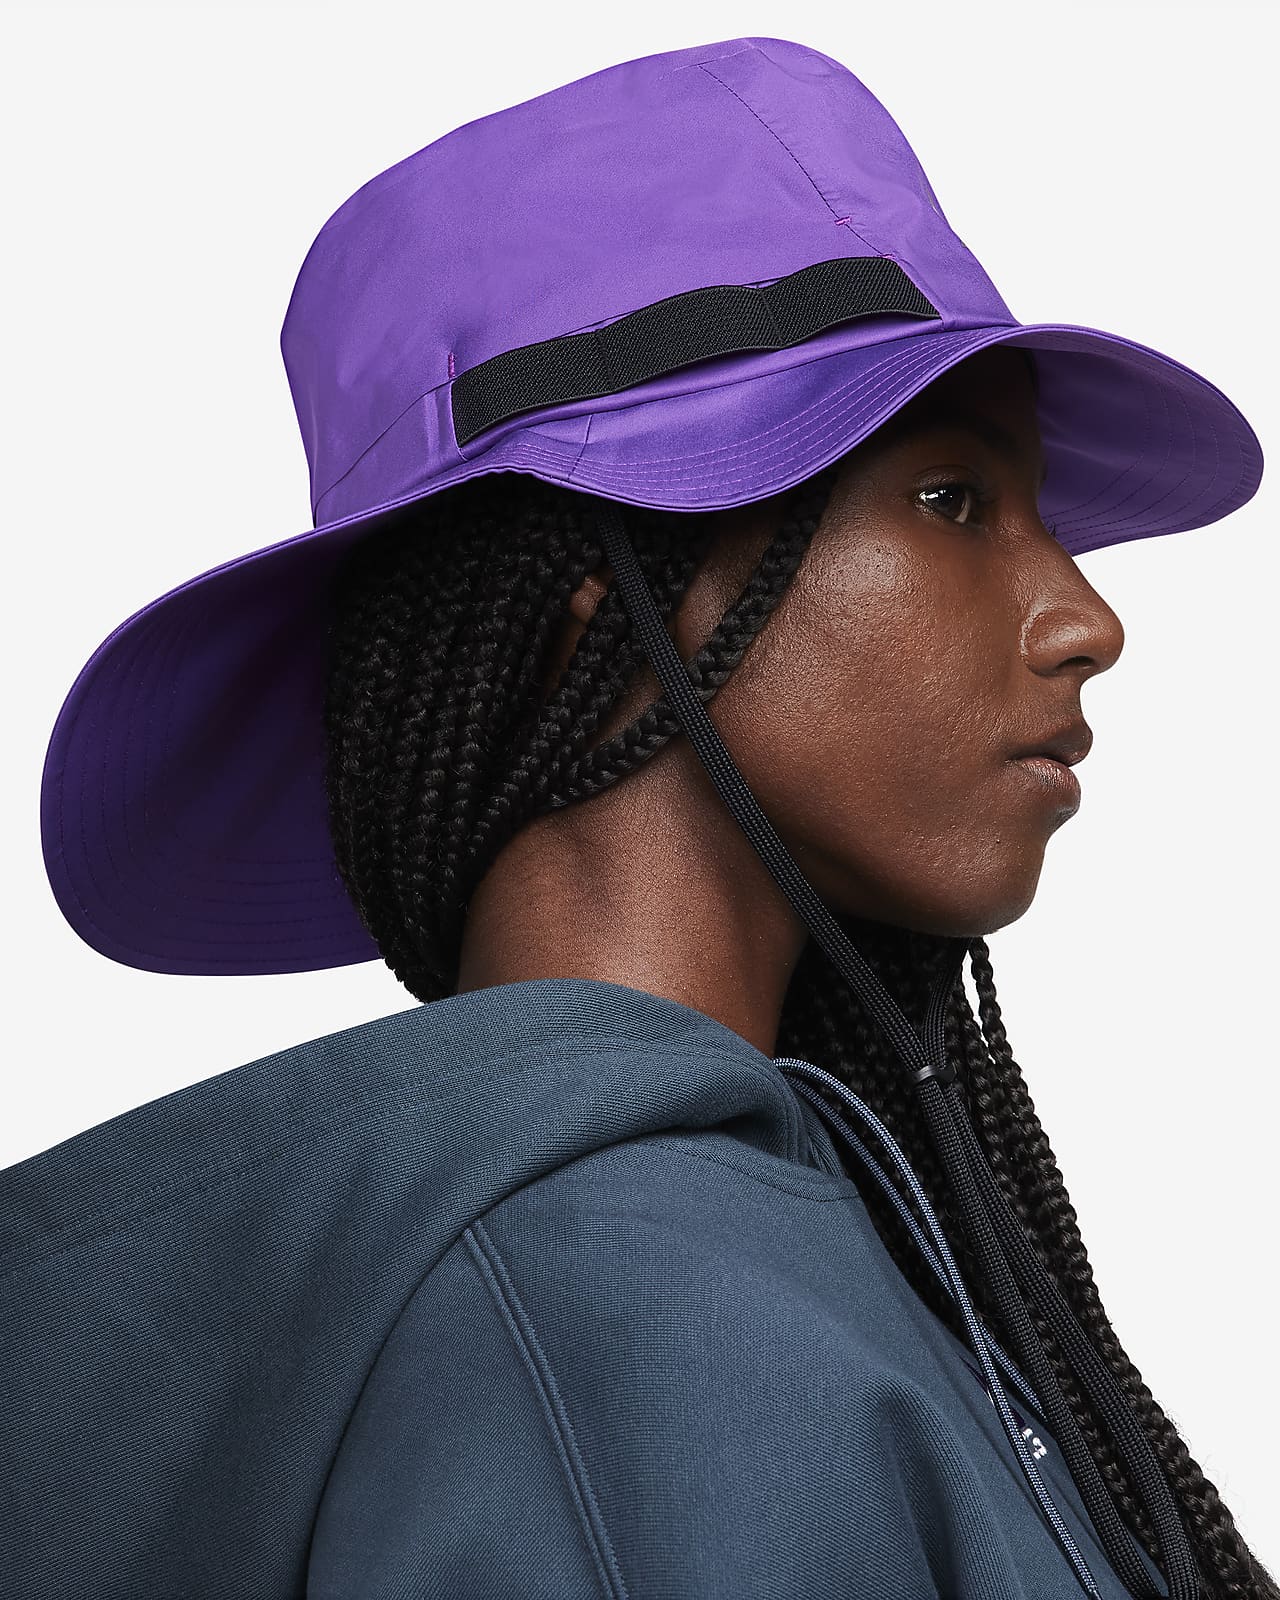 Louis Vuitton LV x YK Reversible Faces Bucket Hat